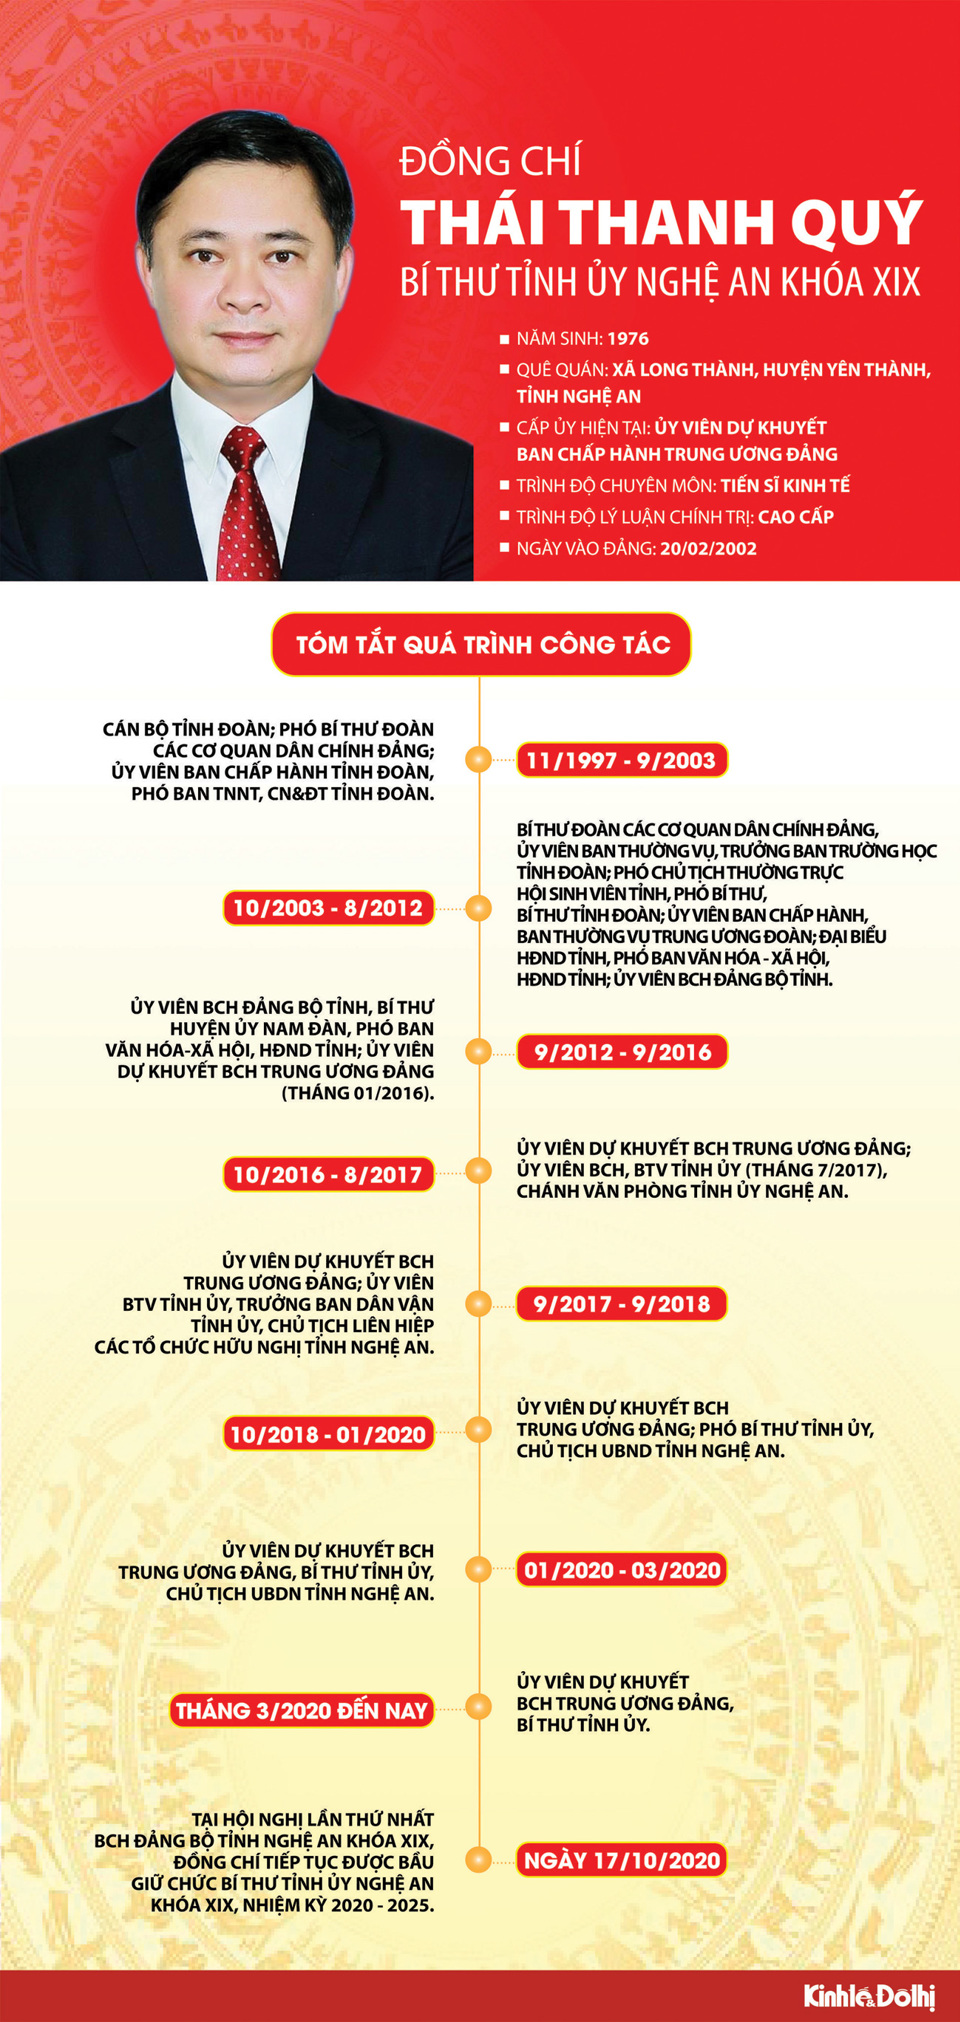 [Infographics] Chân dung Bí thư Tỉnh ủy Nghệ An Thái Thanh Quý - Ảnh 1